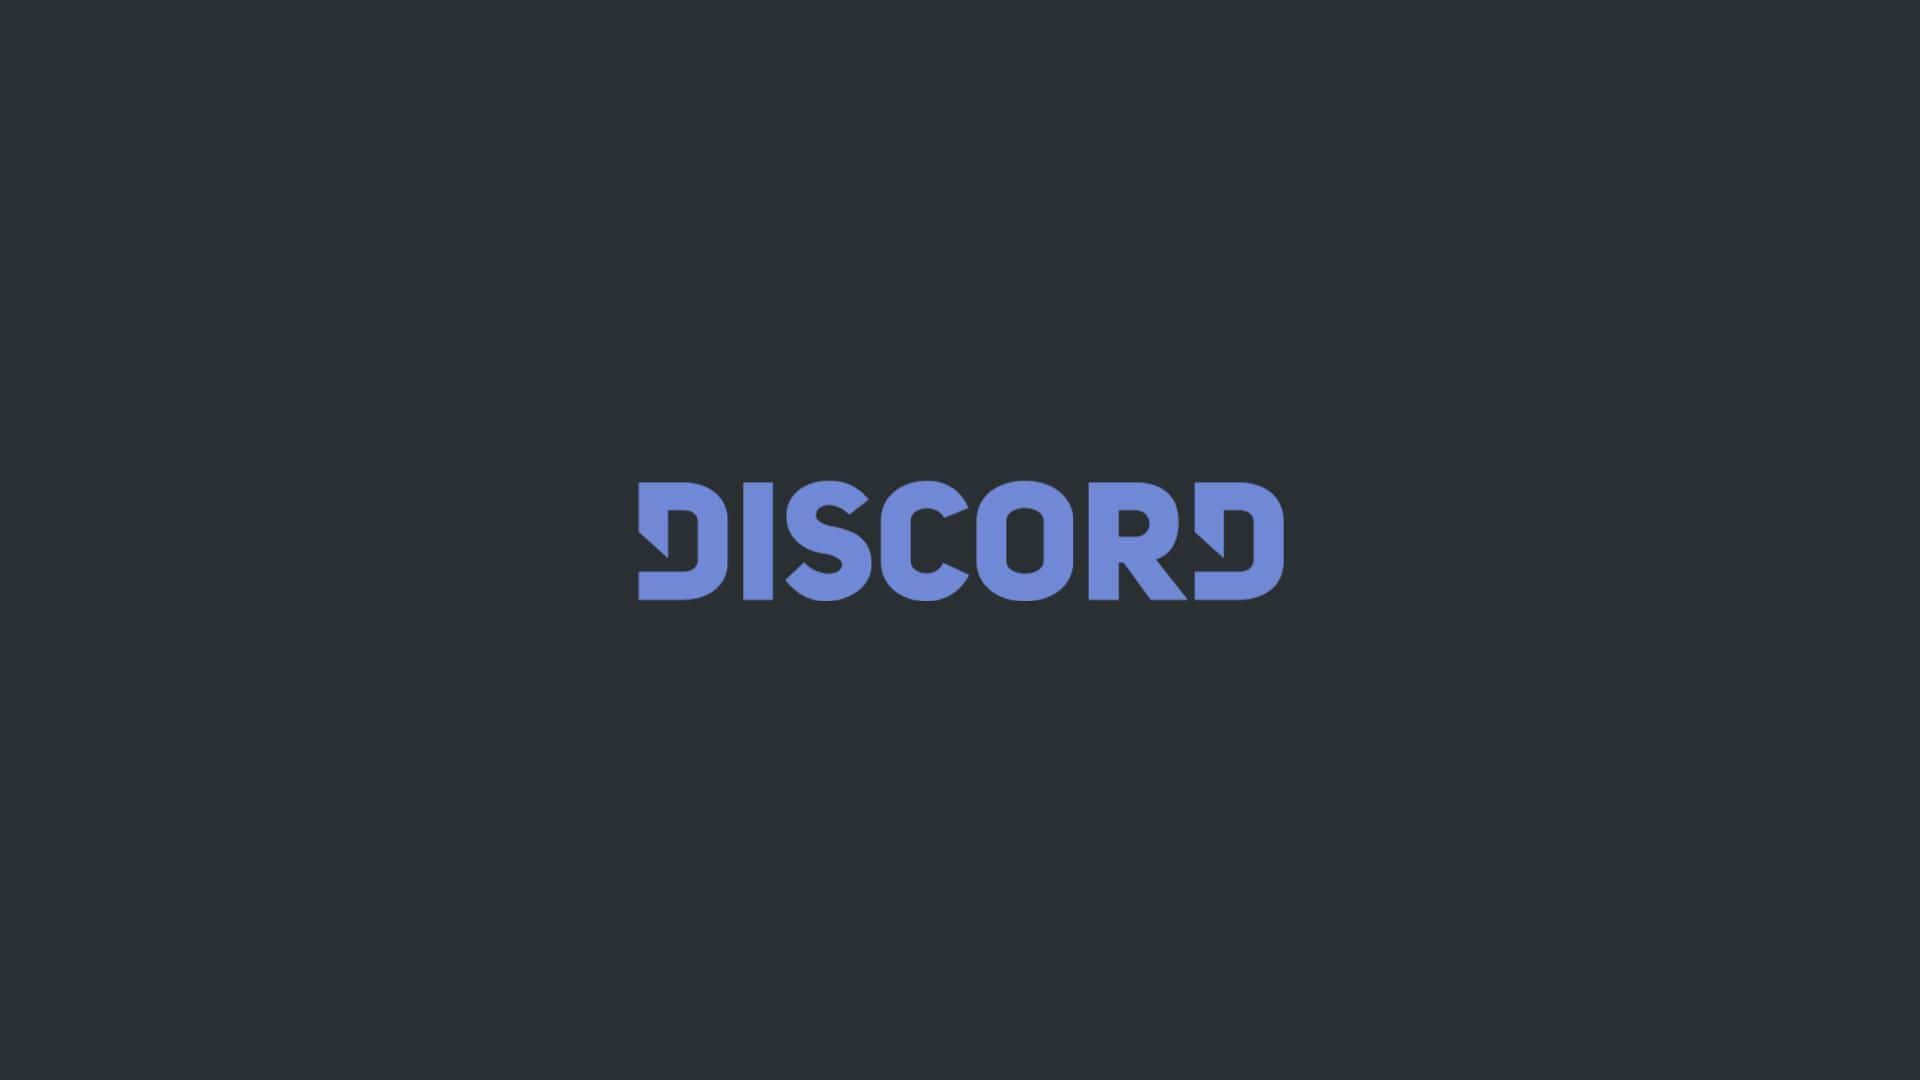 Discord-logo 1920 X 1080 Wallpaper